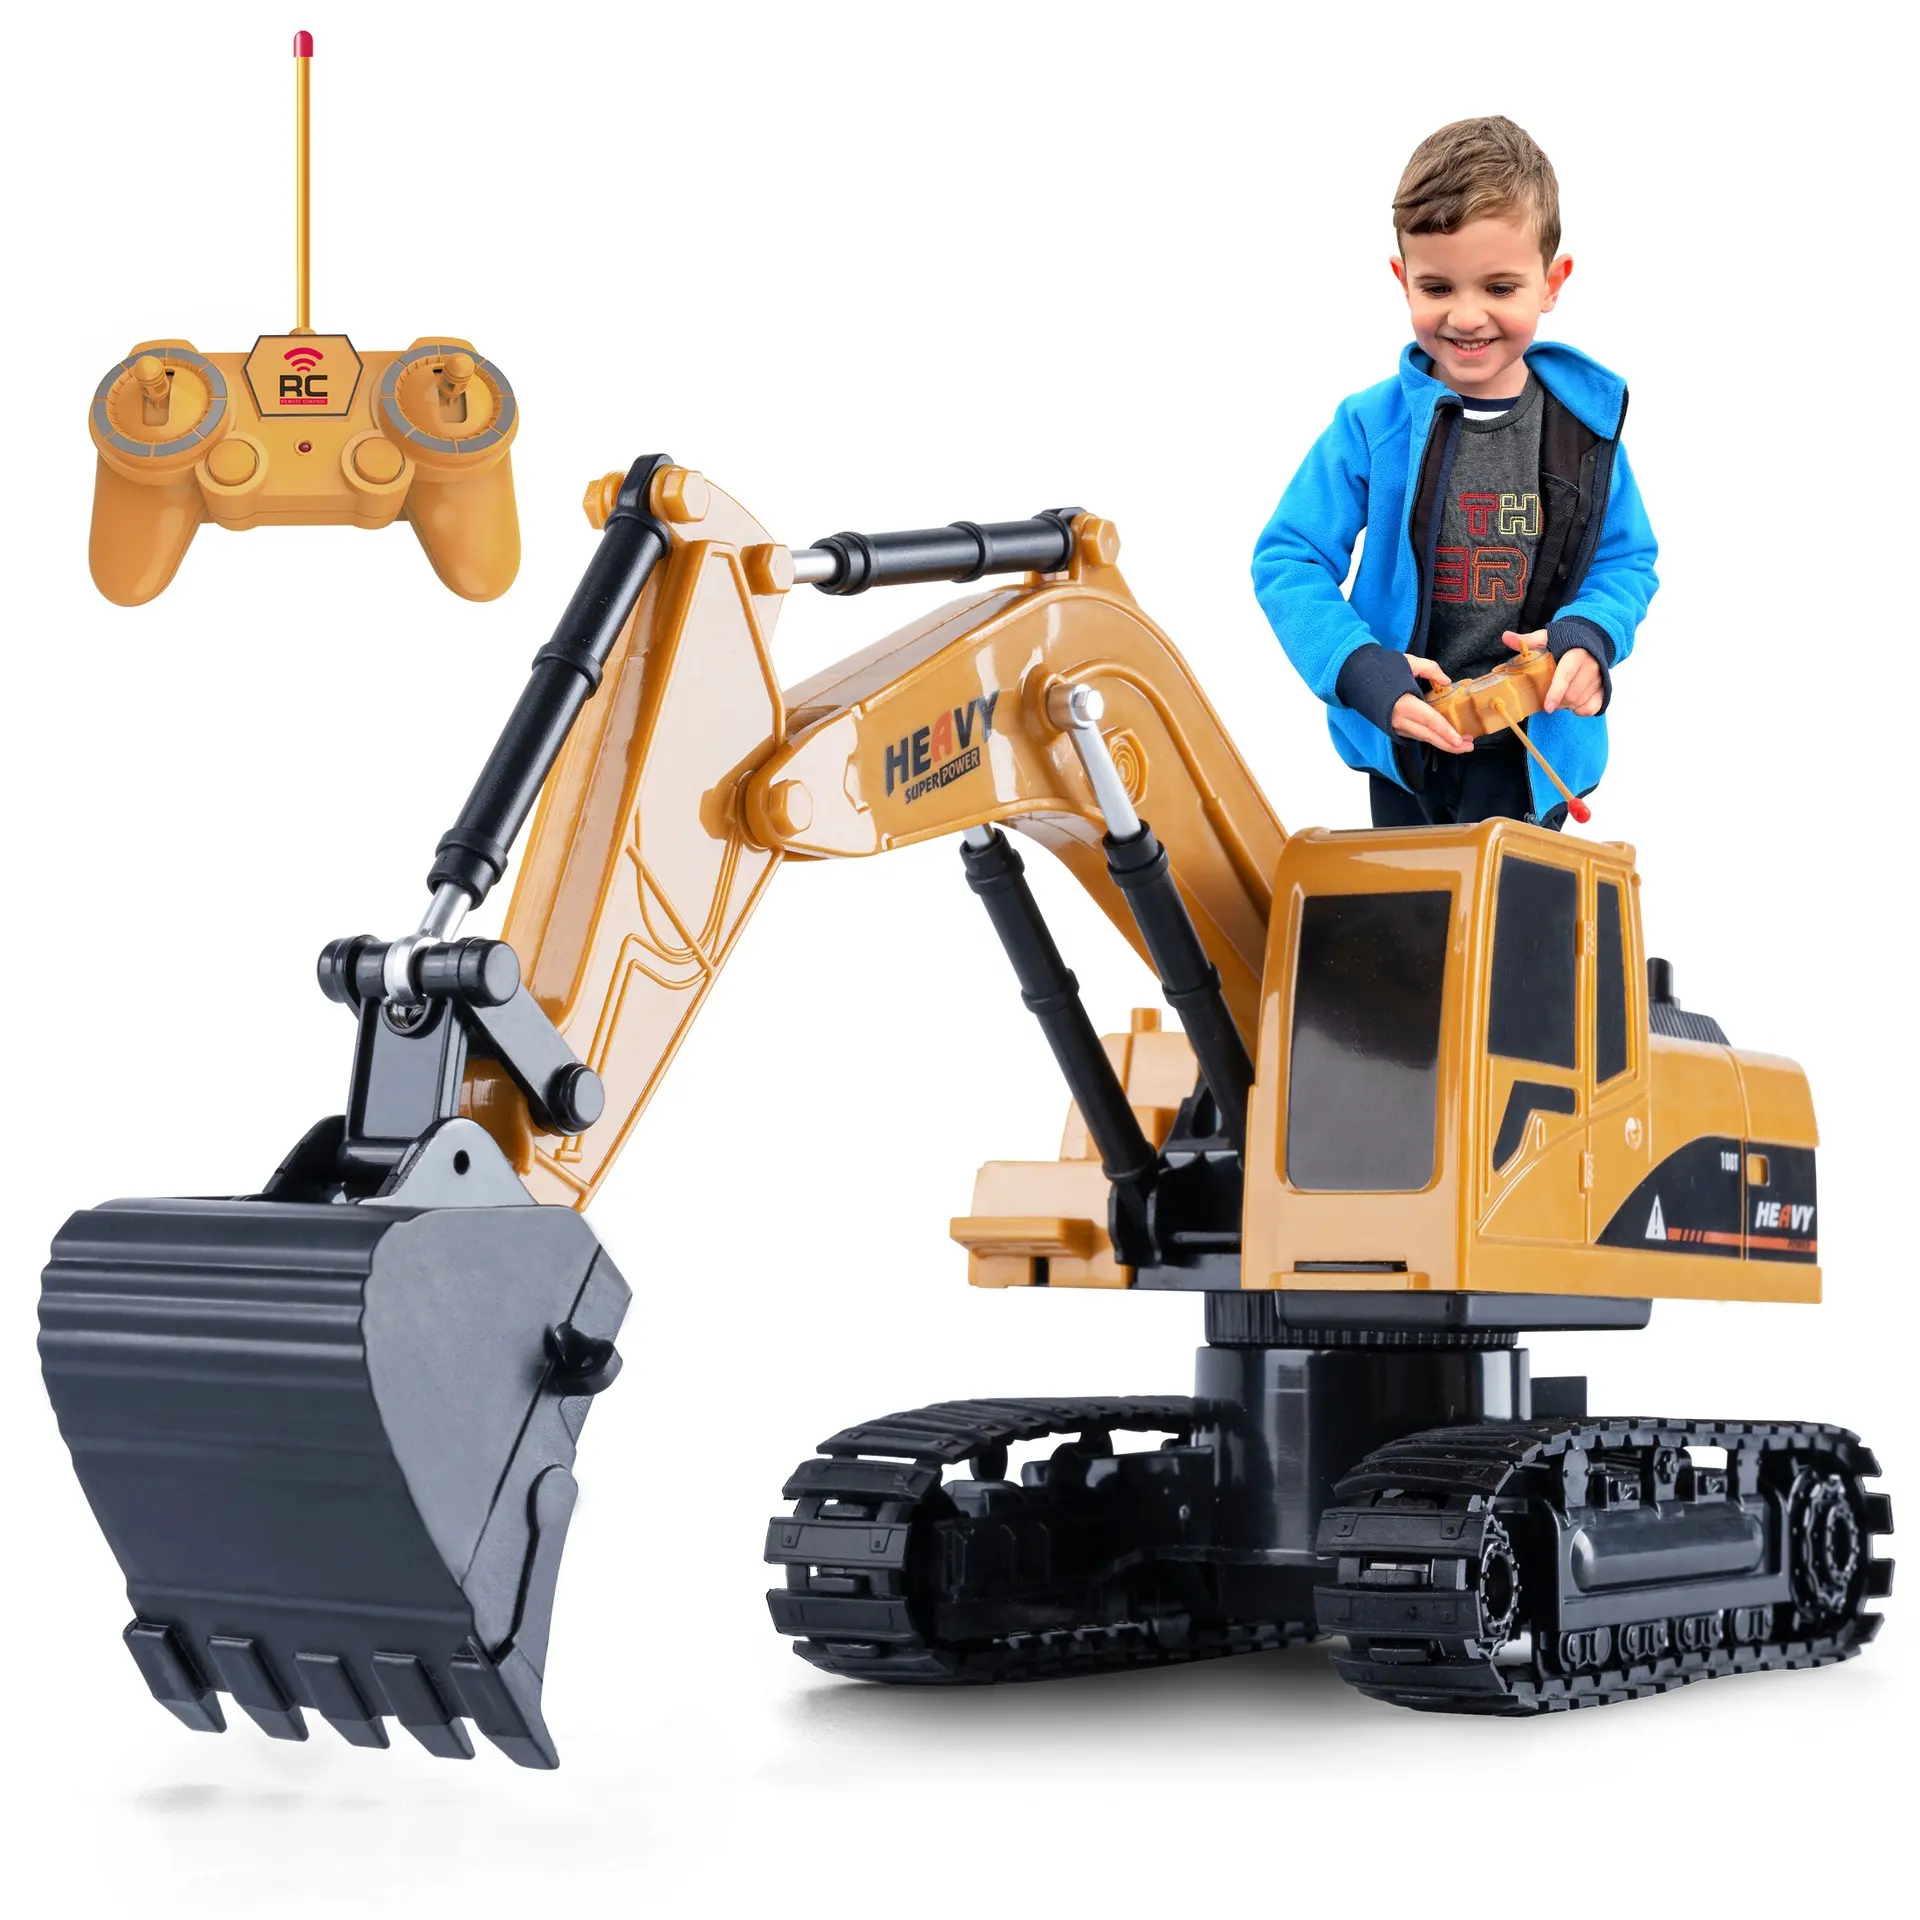 Mainan mobil ekskavator elektrik 6 saluran 1:20, mainan truk konstruksi Remote control bahan Aloi, dapat diisi ulang plastik